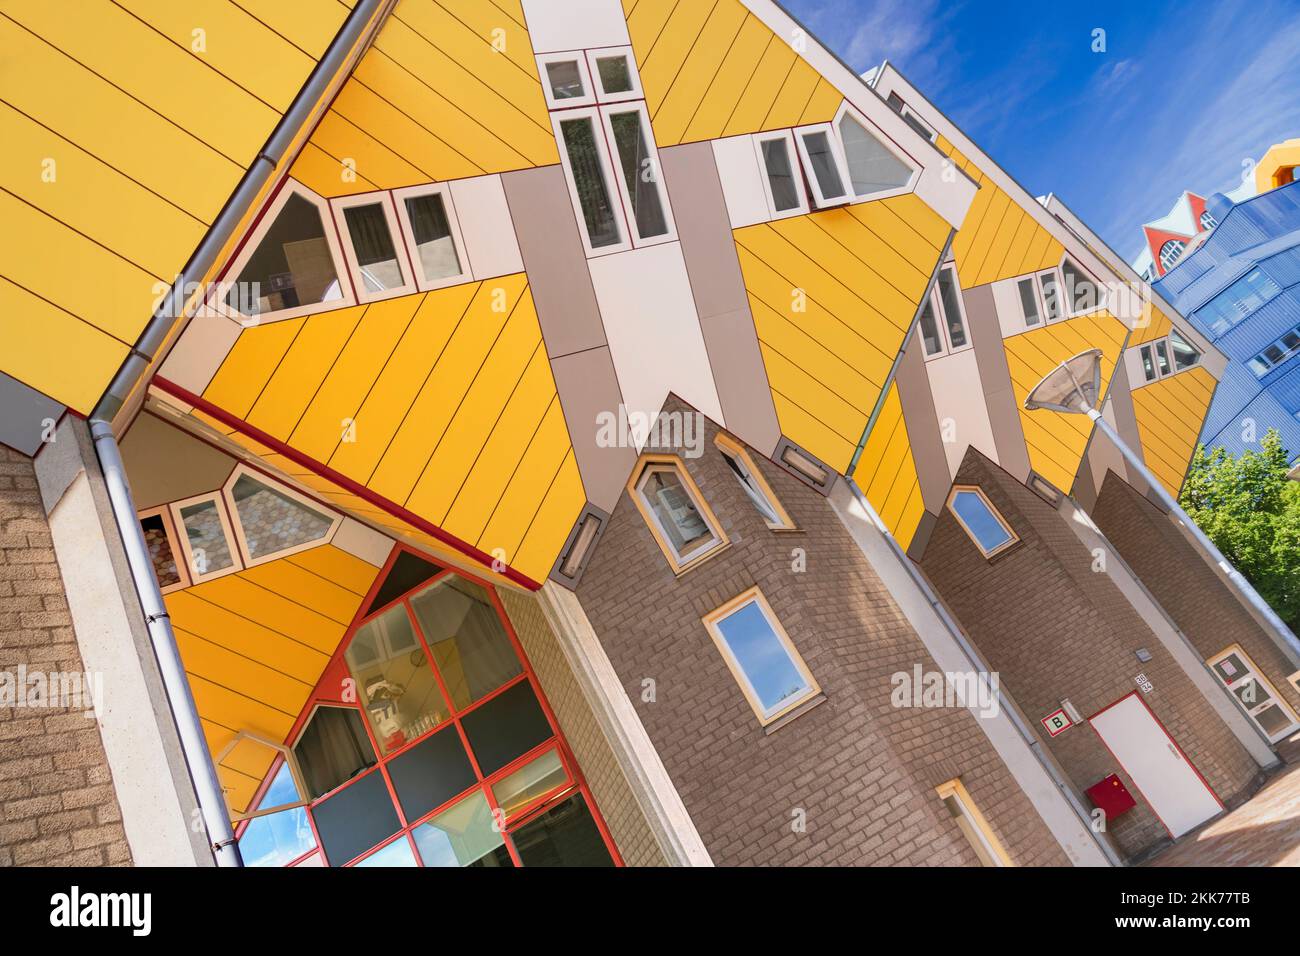 Holanda, Rotterdam, El Cubo Houses, un desarrollo de viviendas innovadoras donde cada casa es un cubo inclinado por encima de 45 grados, diseñado por el arquitecto holandés Piet Blom y el cult entre 1977 y 1984. Foto de stock